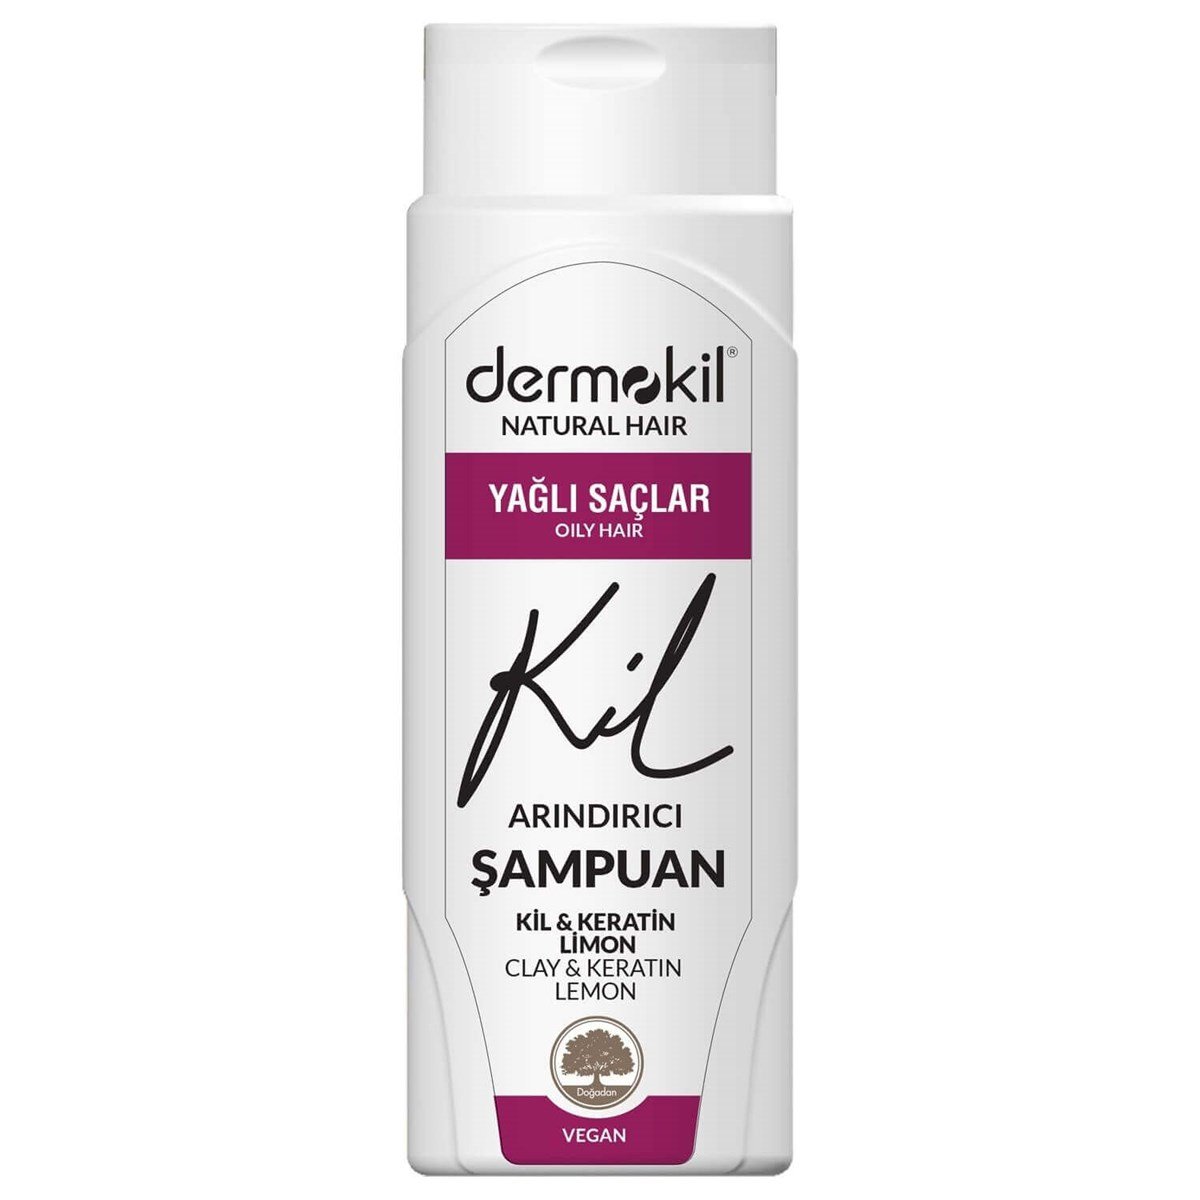 Dermokil Şampuan Natural Kil Arındırıcı Vegan Yağlı Saçlar 400 ml Fiyatları  | Dermosiparis.com